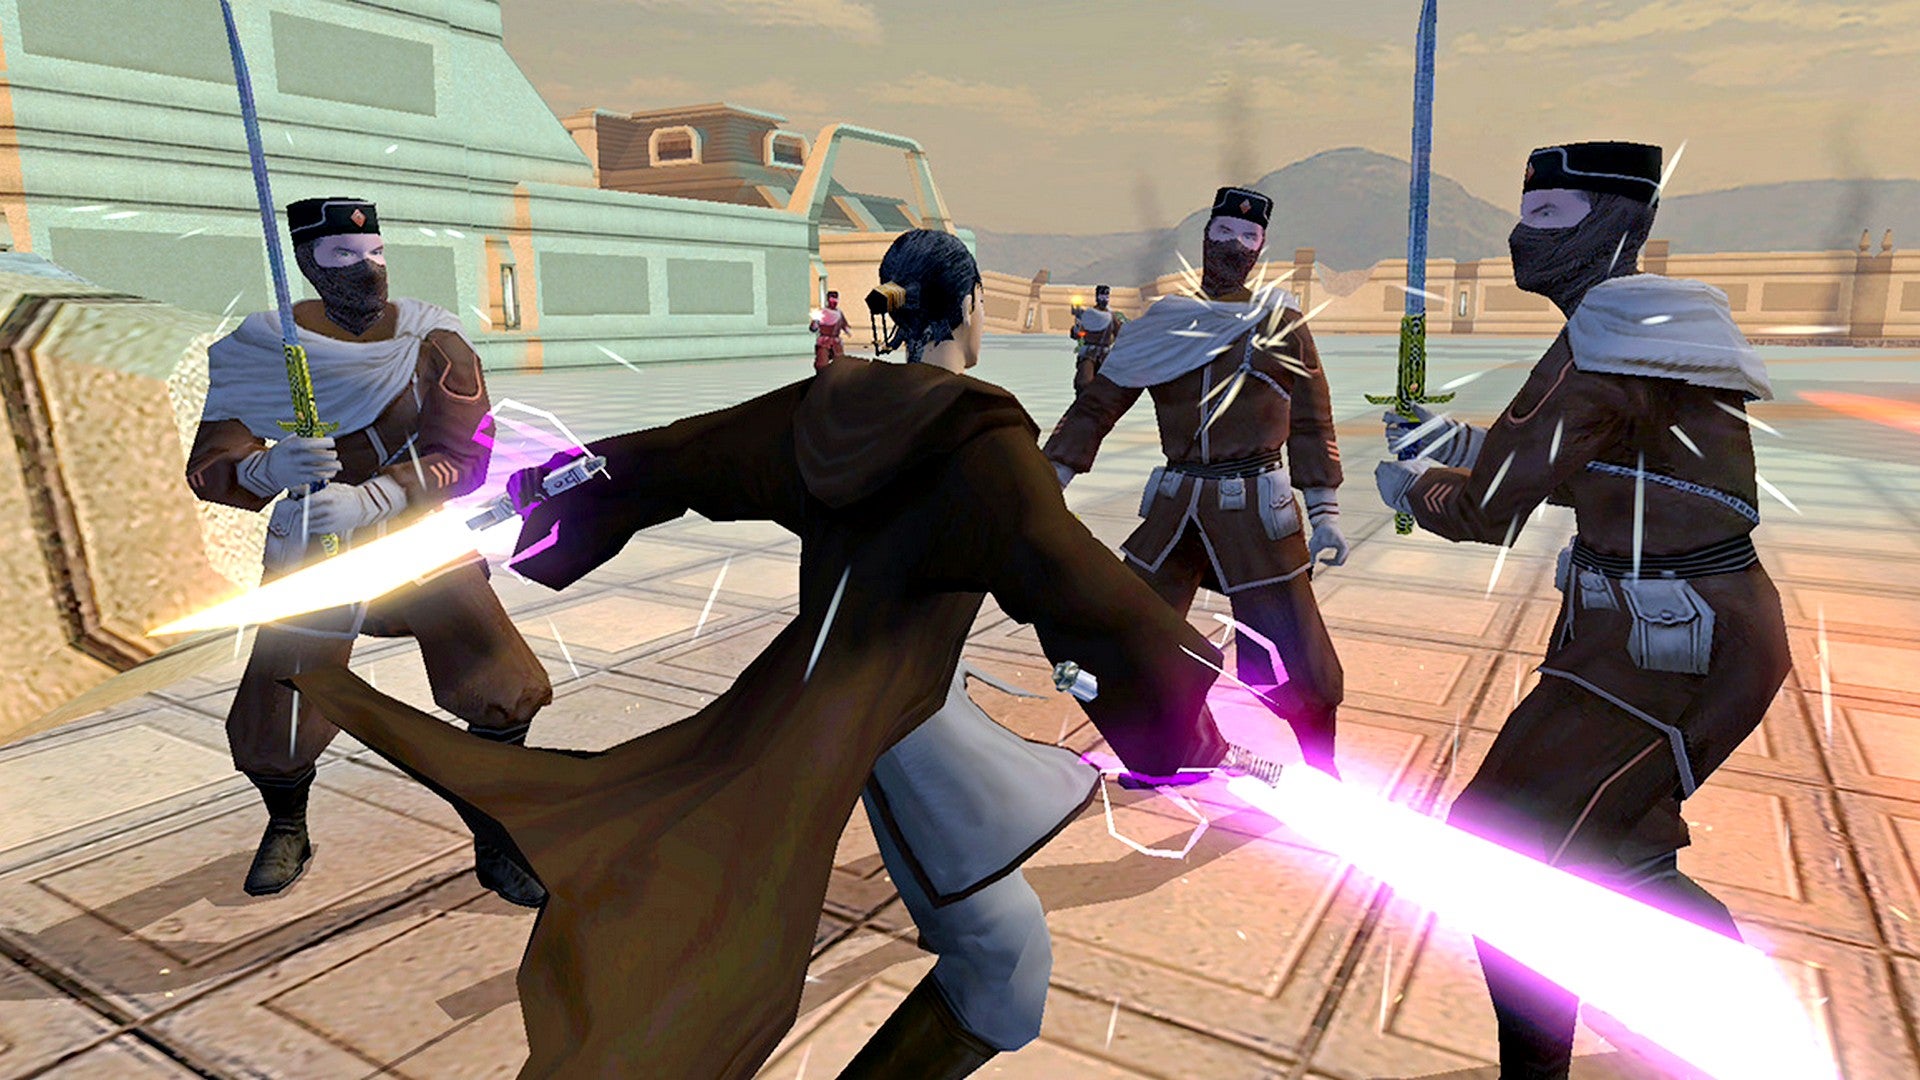 Bilder zu Star Wars: Knights of the Old Republic 2: Aspyr empfiehlt Cheats, um es auf Switch durchzuspielen